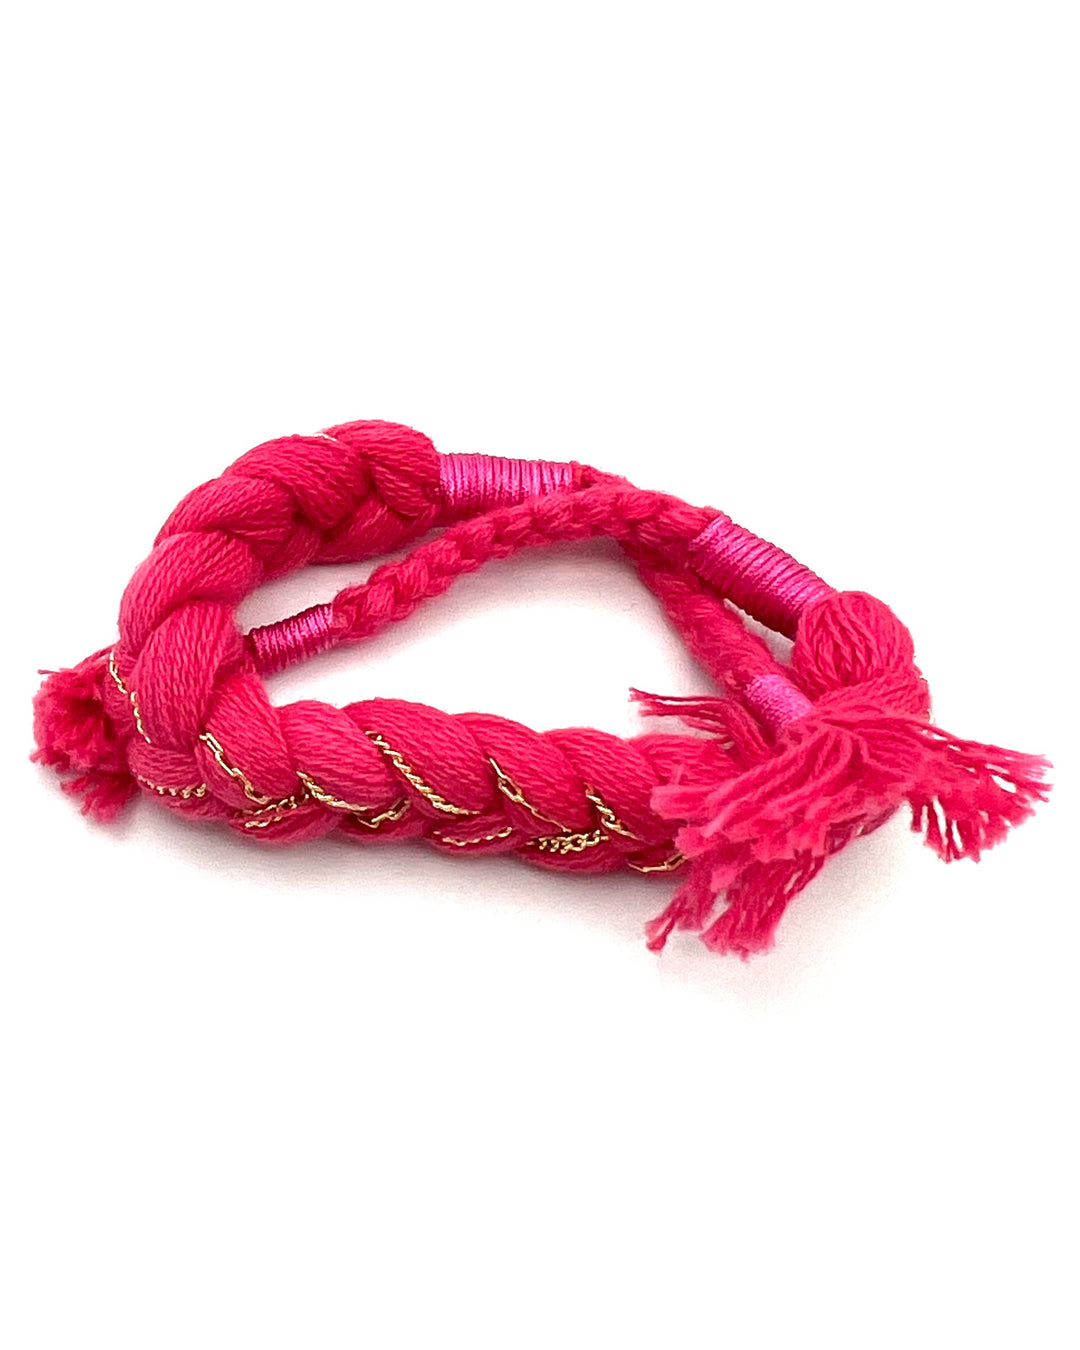 Pink Braided Rope Bracelet